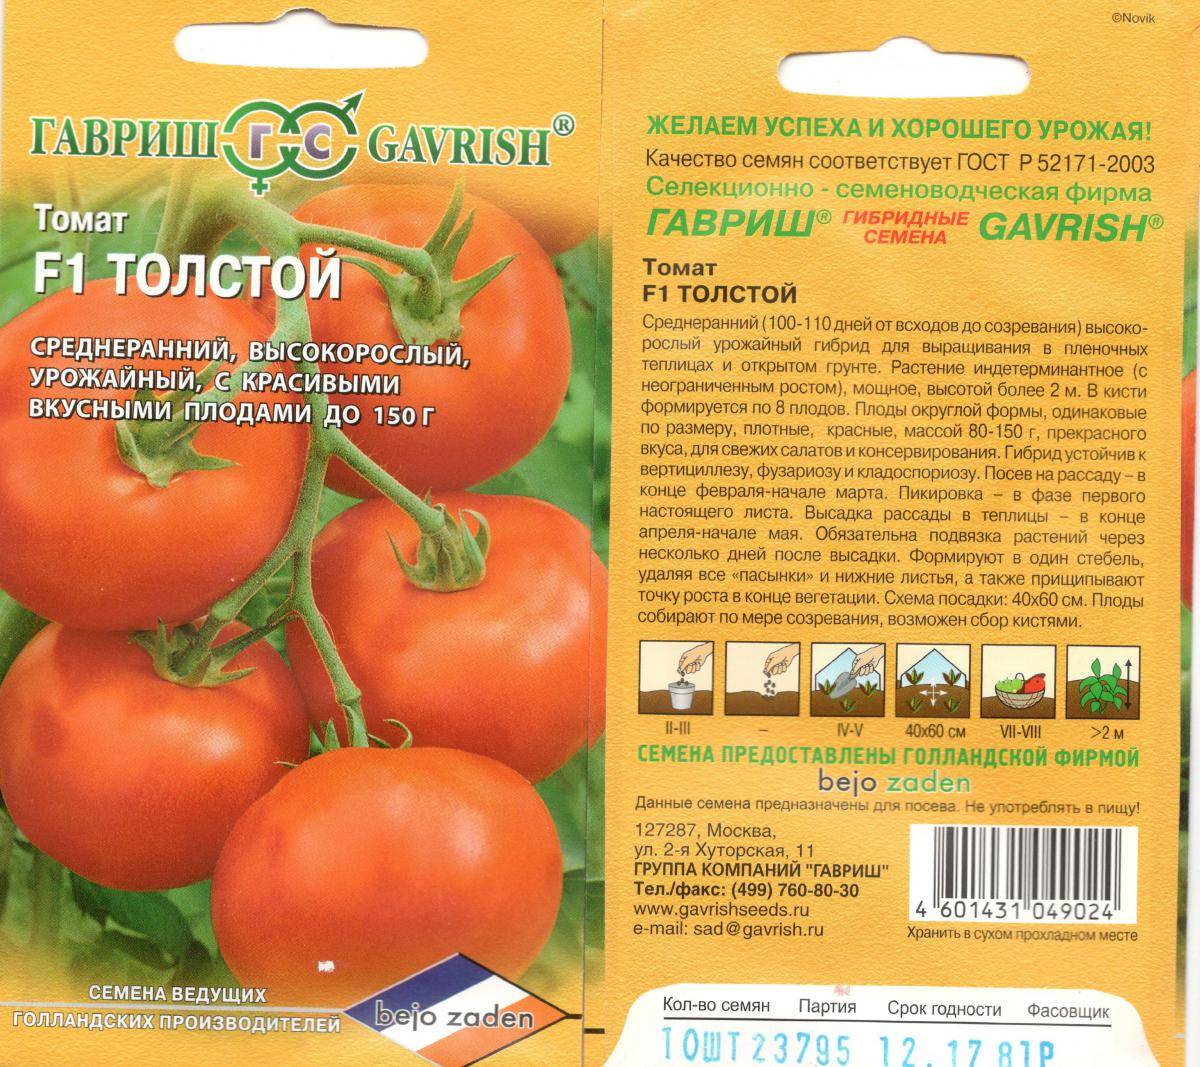 Томат «толстый джек» - отзывы, фото помидоров, характеристики и описание сорта